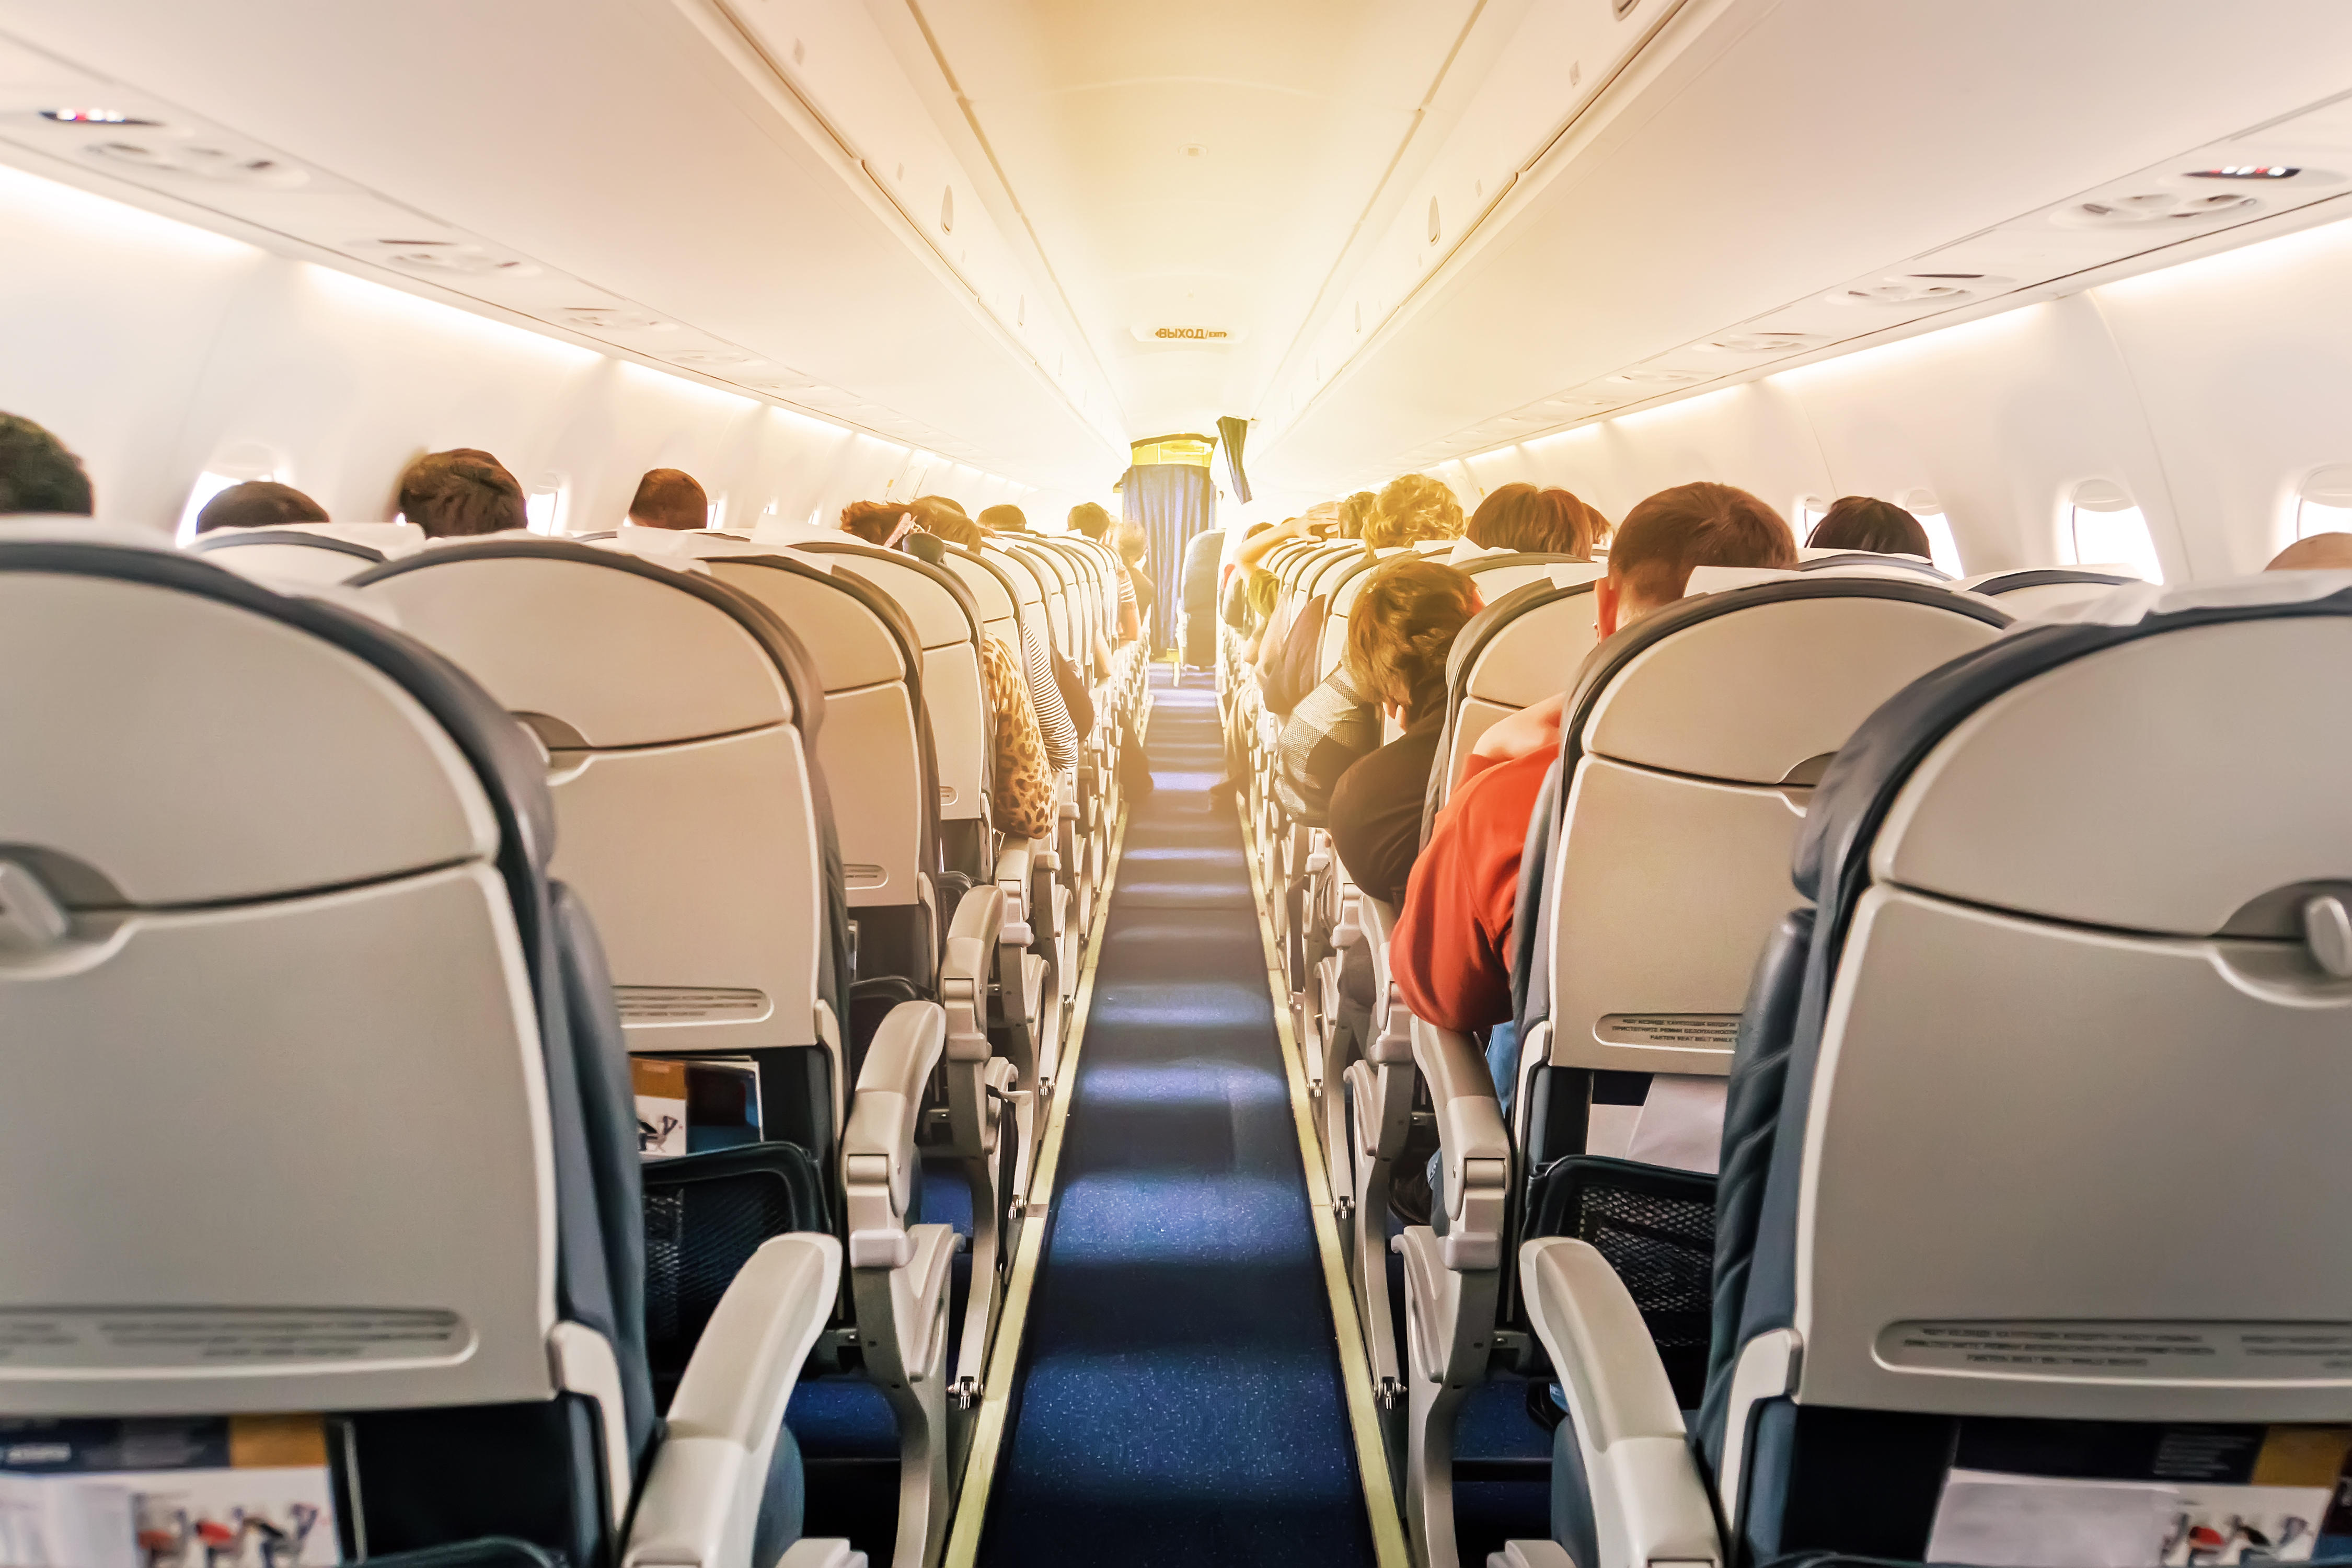 En el protocolo de vuelo, durante las horas que dure el viaje, siempre se debe llevar la mascarilla o el barbijo puesto (Shutterstock)